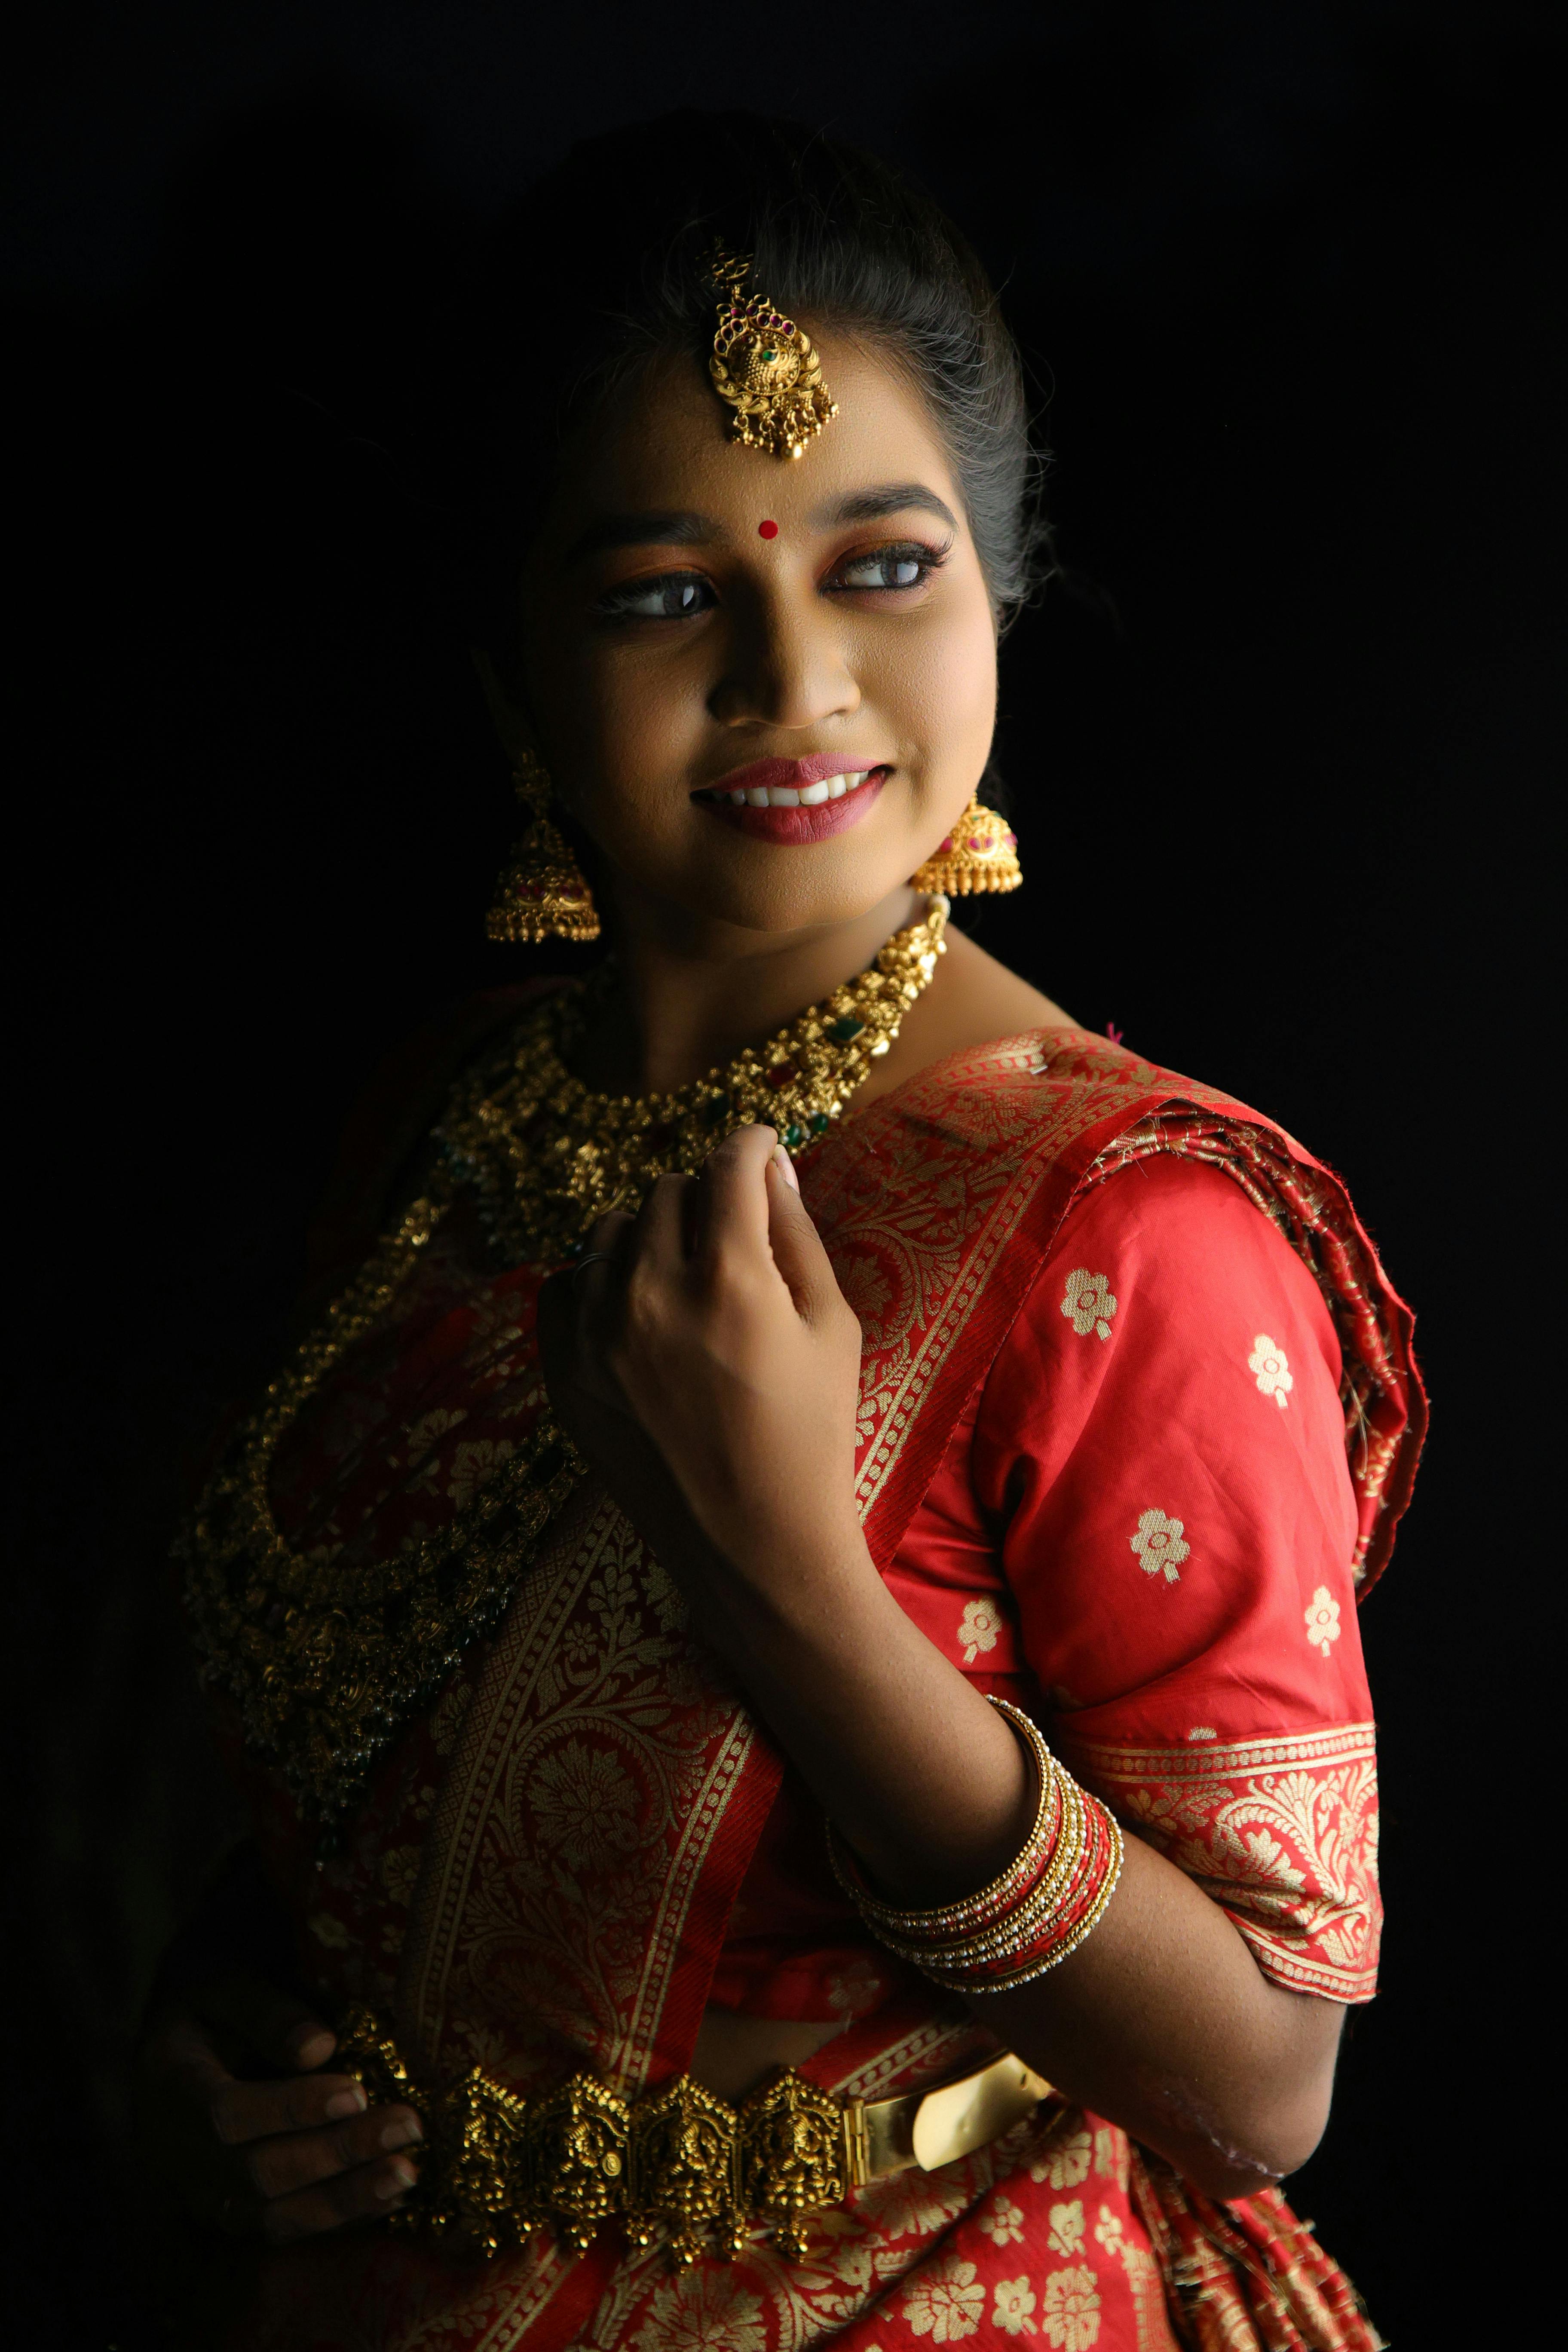 Maharashtrian Wedding Look | Couple wedding dress, Wedding couple poses  photography, Indian bride photography poses